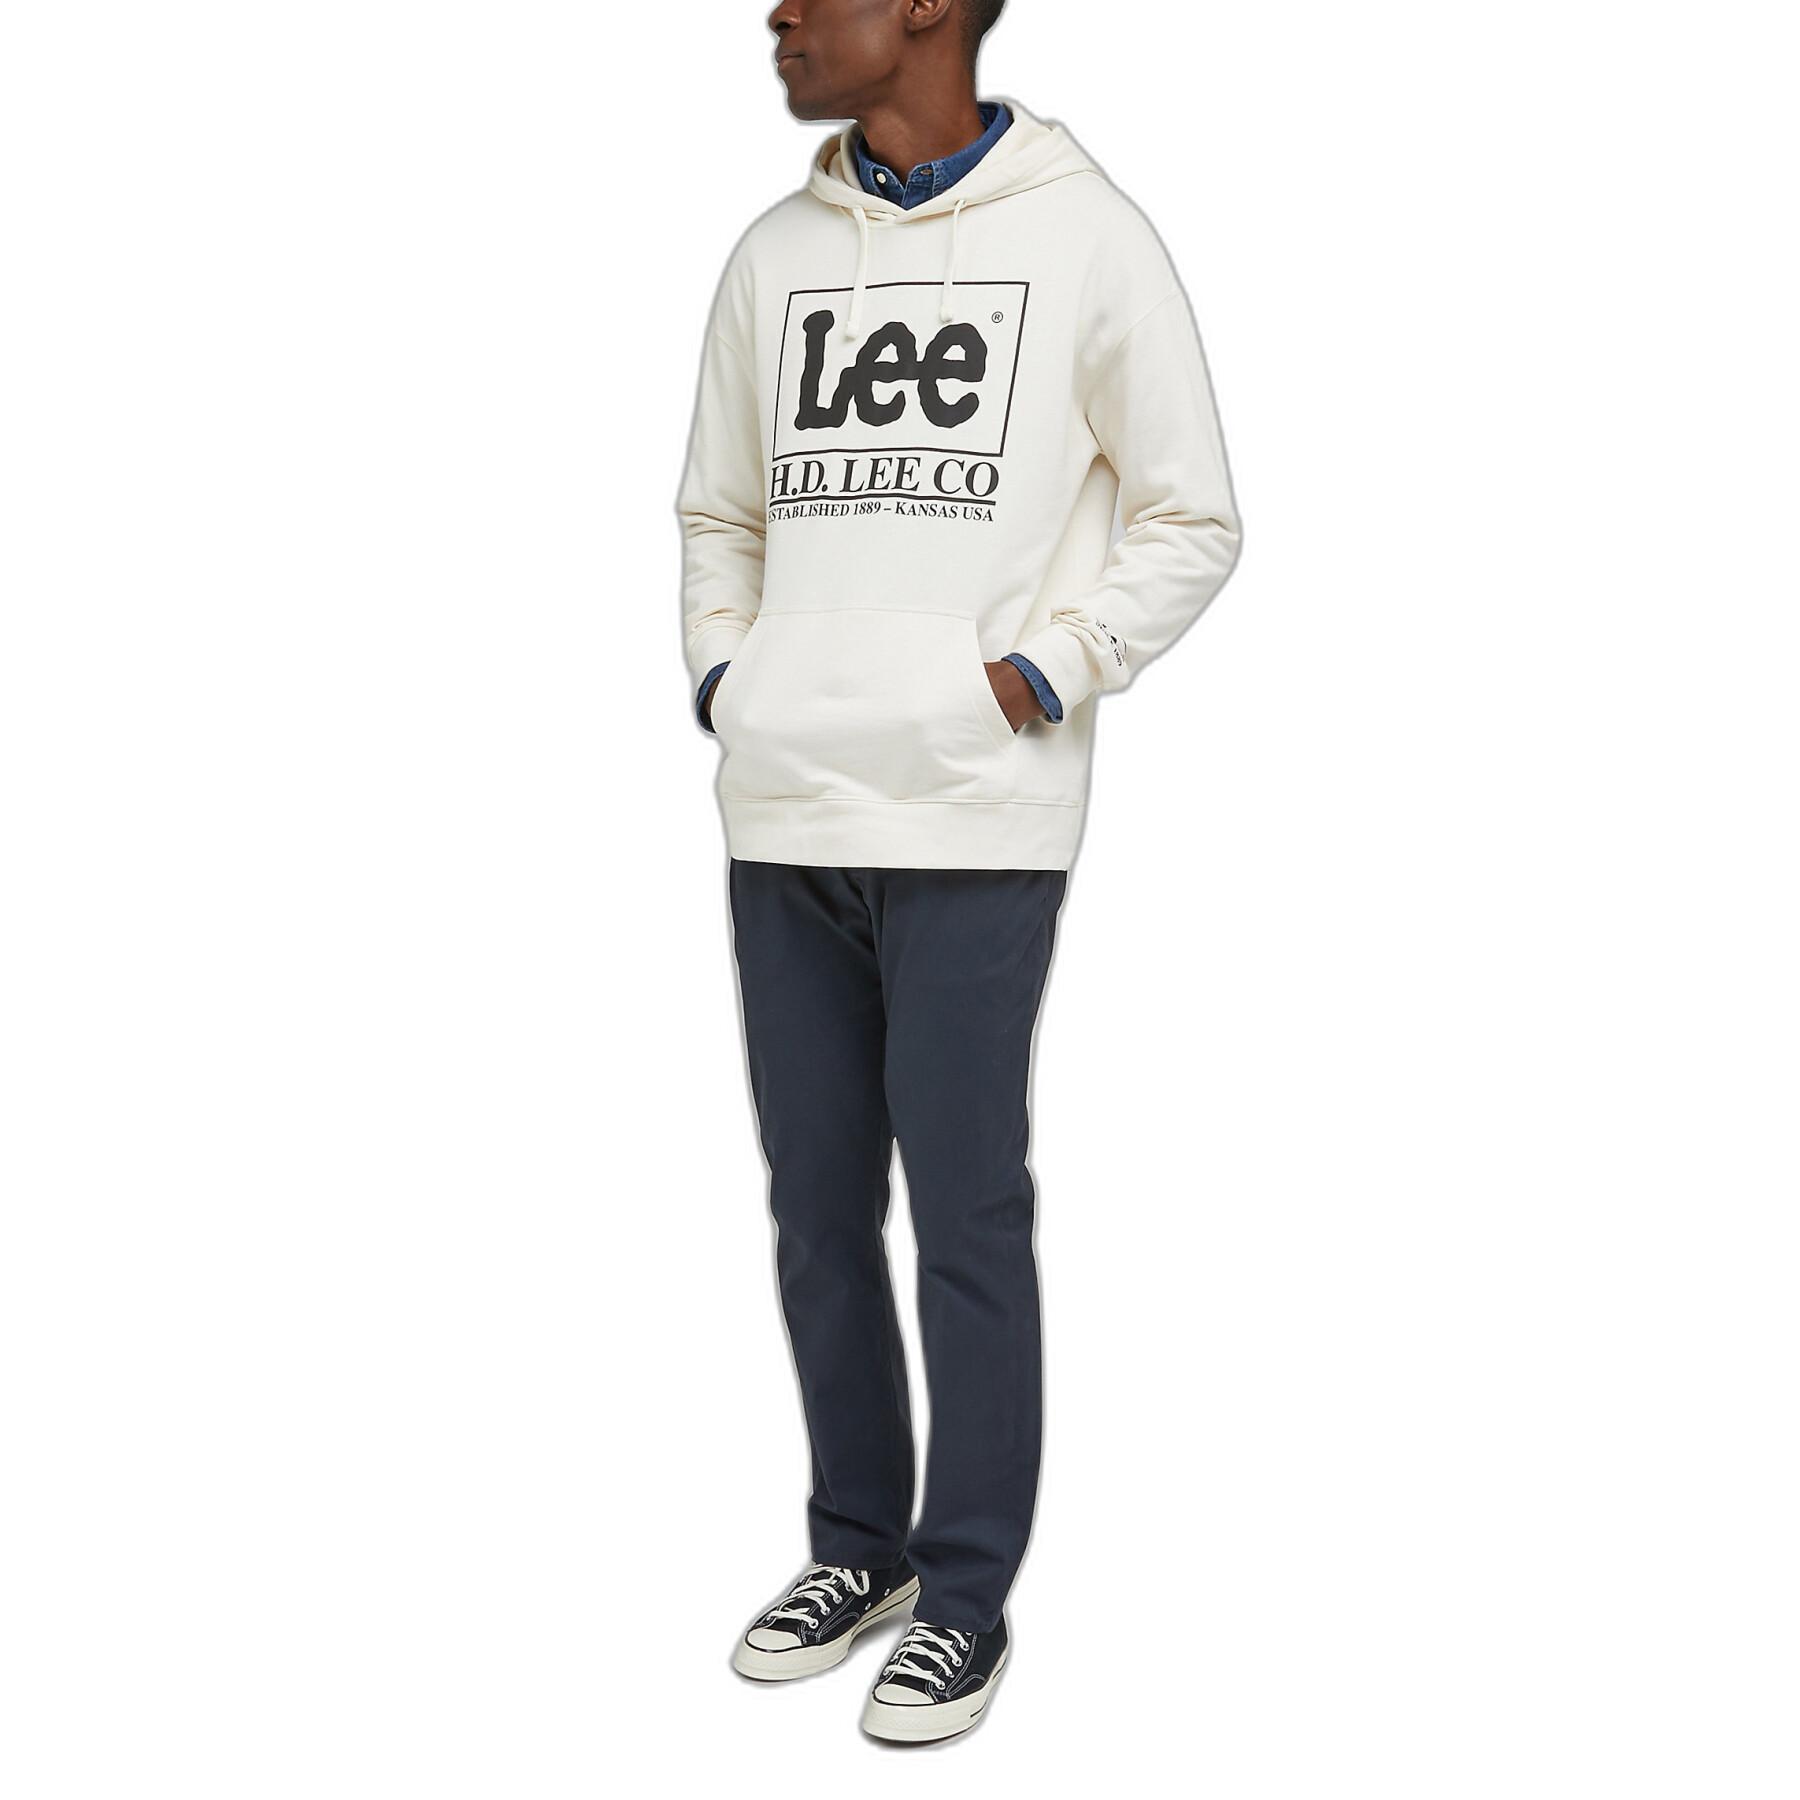 Hoodie weit Lee Logo